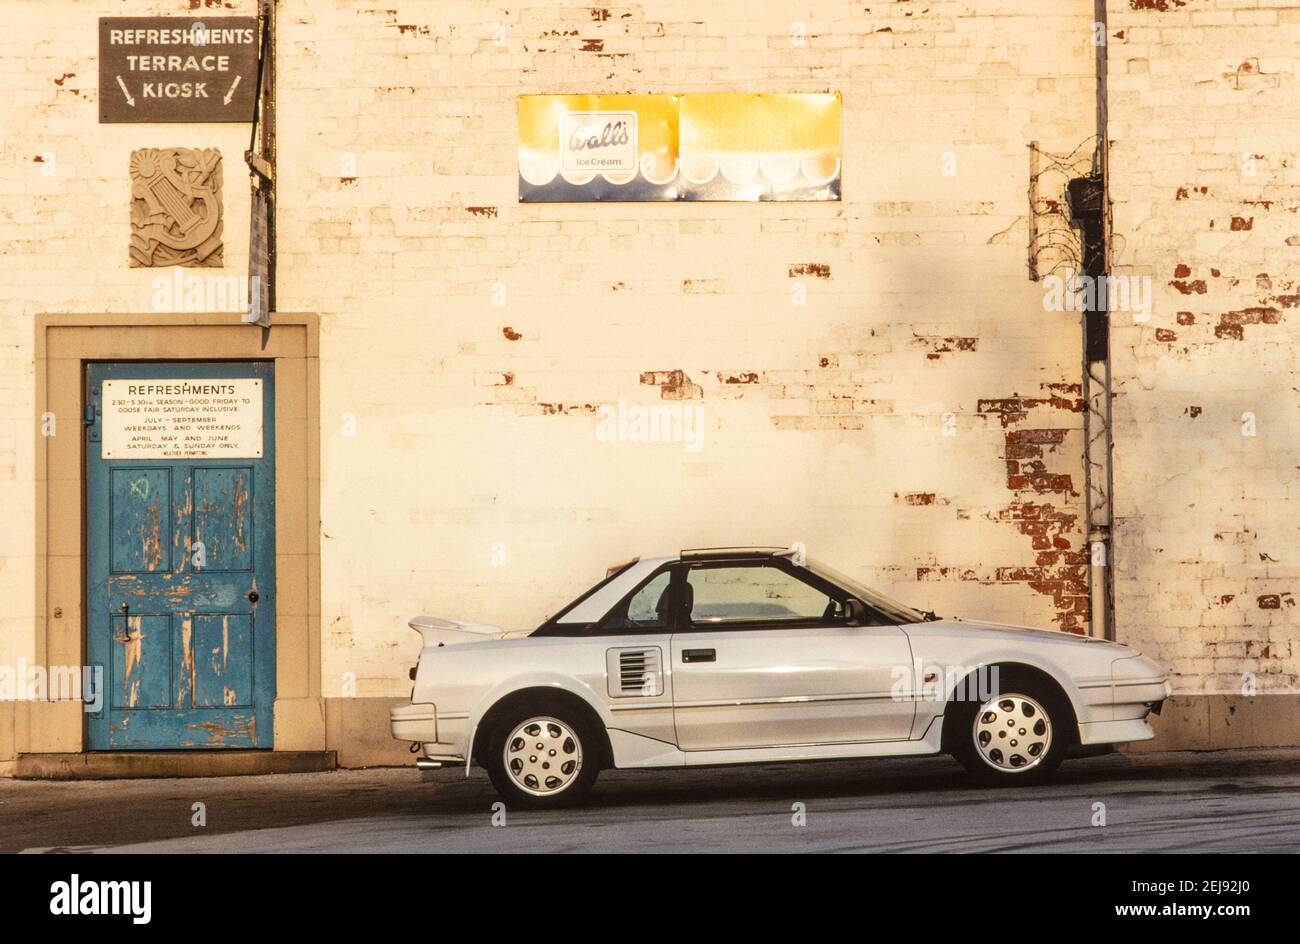 1993 EIN weißer Toyota MR2 Toyota fotografiert gegen eine bemalte Wand mit abblätternder Farbe, um neu und alt zu kontrastieren. Dieser japanische Sportwagen war ein 'Midship Runabout 2-Sitzer' 'mid-Motor, Hinterrad-Antrieb, 2-Sitzer' oder MR2. Es hatte scharfe, gerade Linien und Pop-up-Lichter England GB Großbritannien Europa Stockfoto